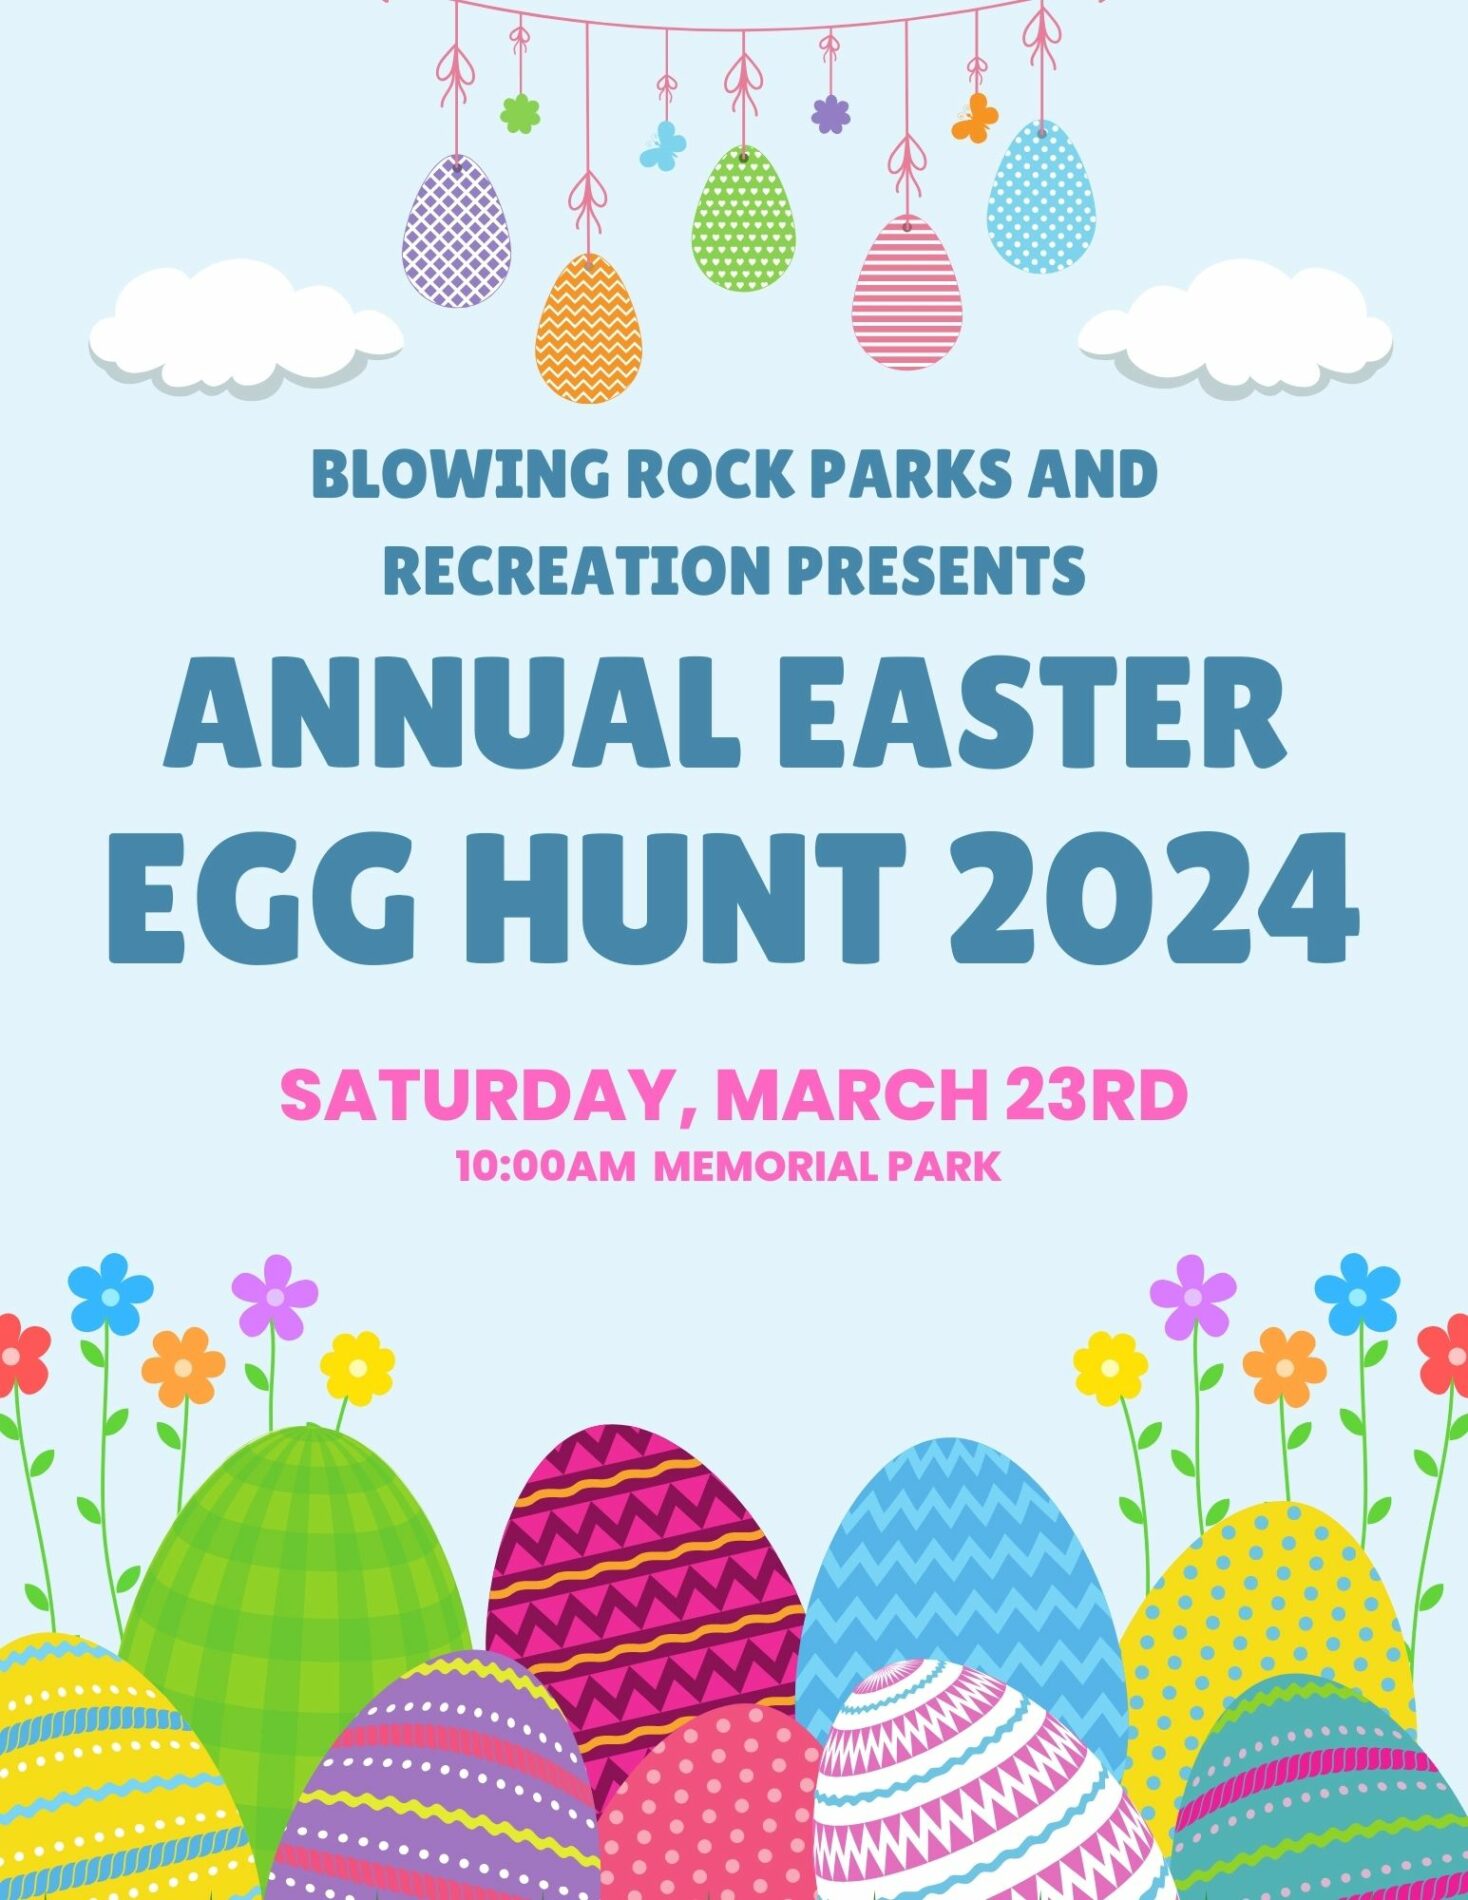 Blowing Rock Easter Egg Hunt